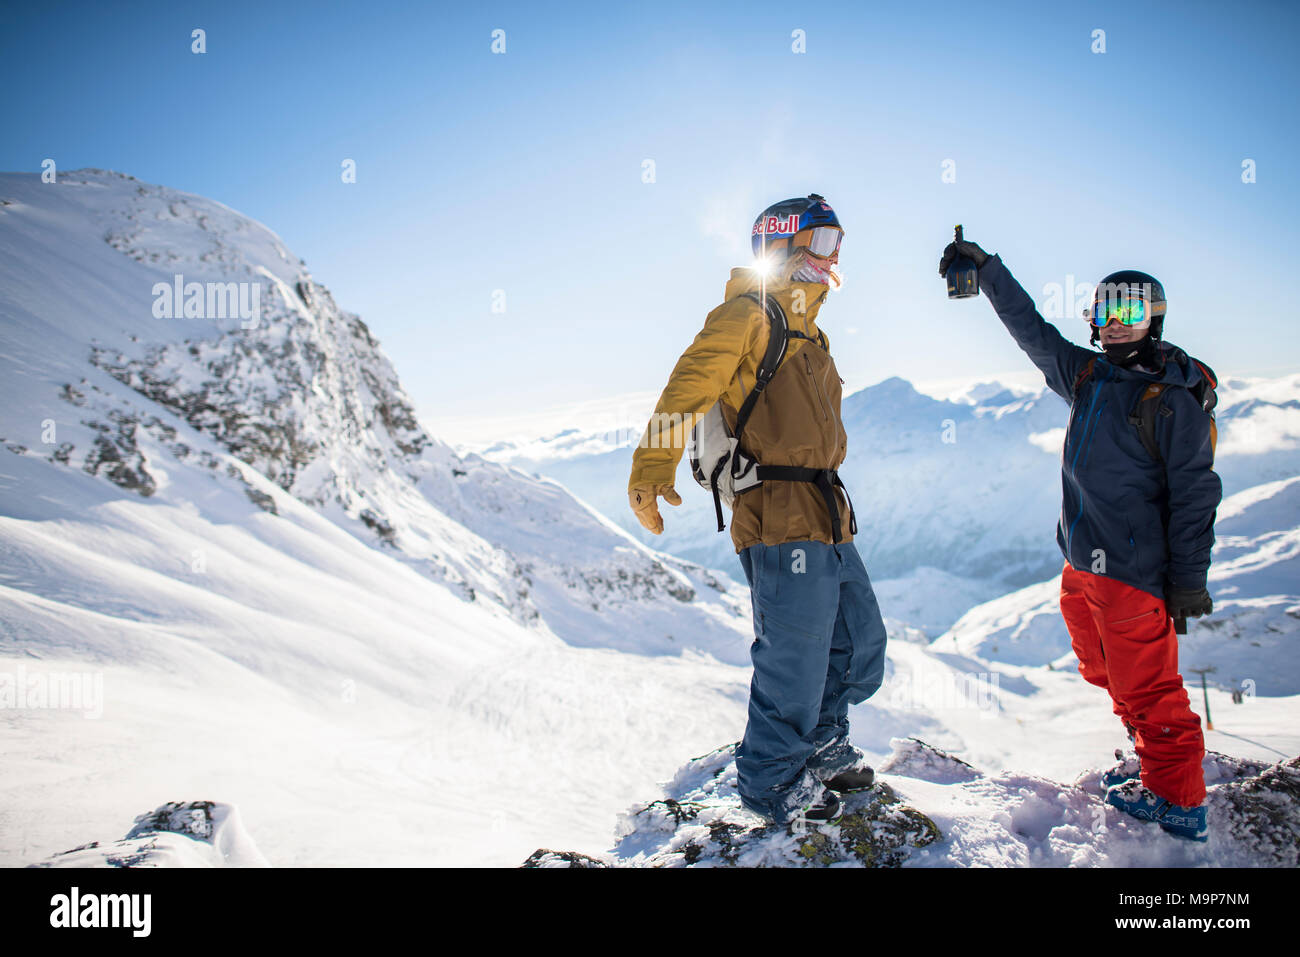 Professionelle Skifahrer tragen Skibekleidung und stehen im Winter Landschaft mit Bergen, Monterosa Ski Mountain Resort in Gressoney, Aosta, Italien Stockfoto